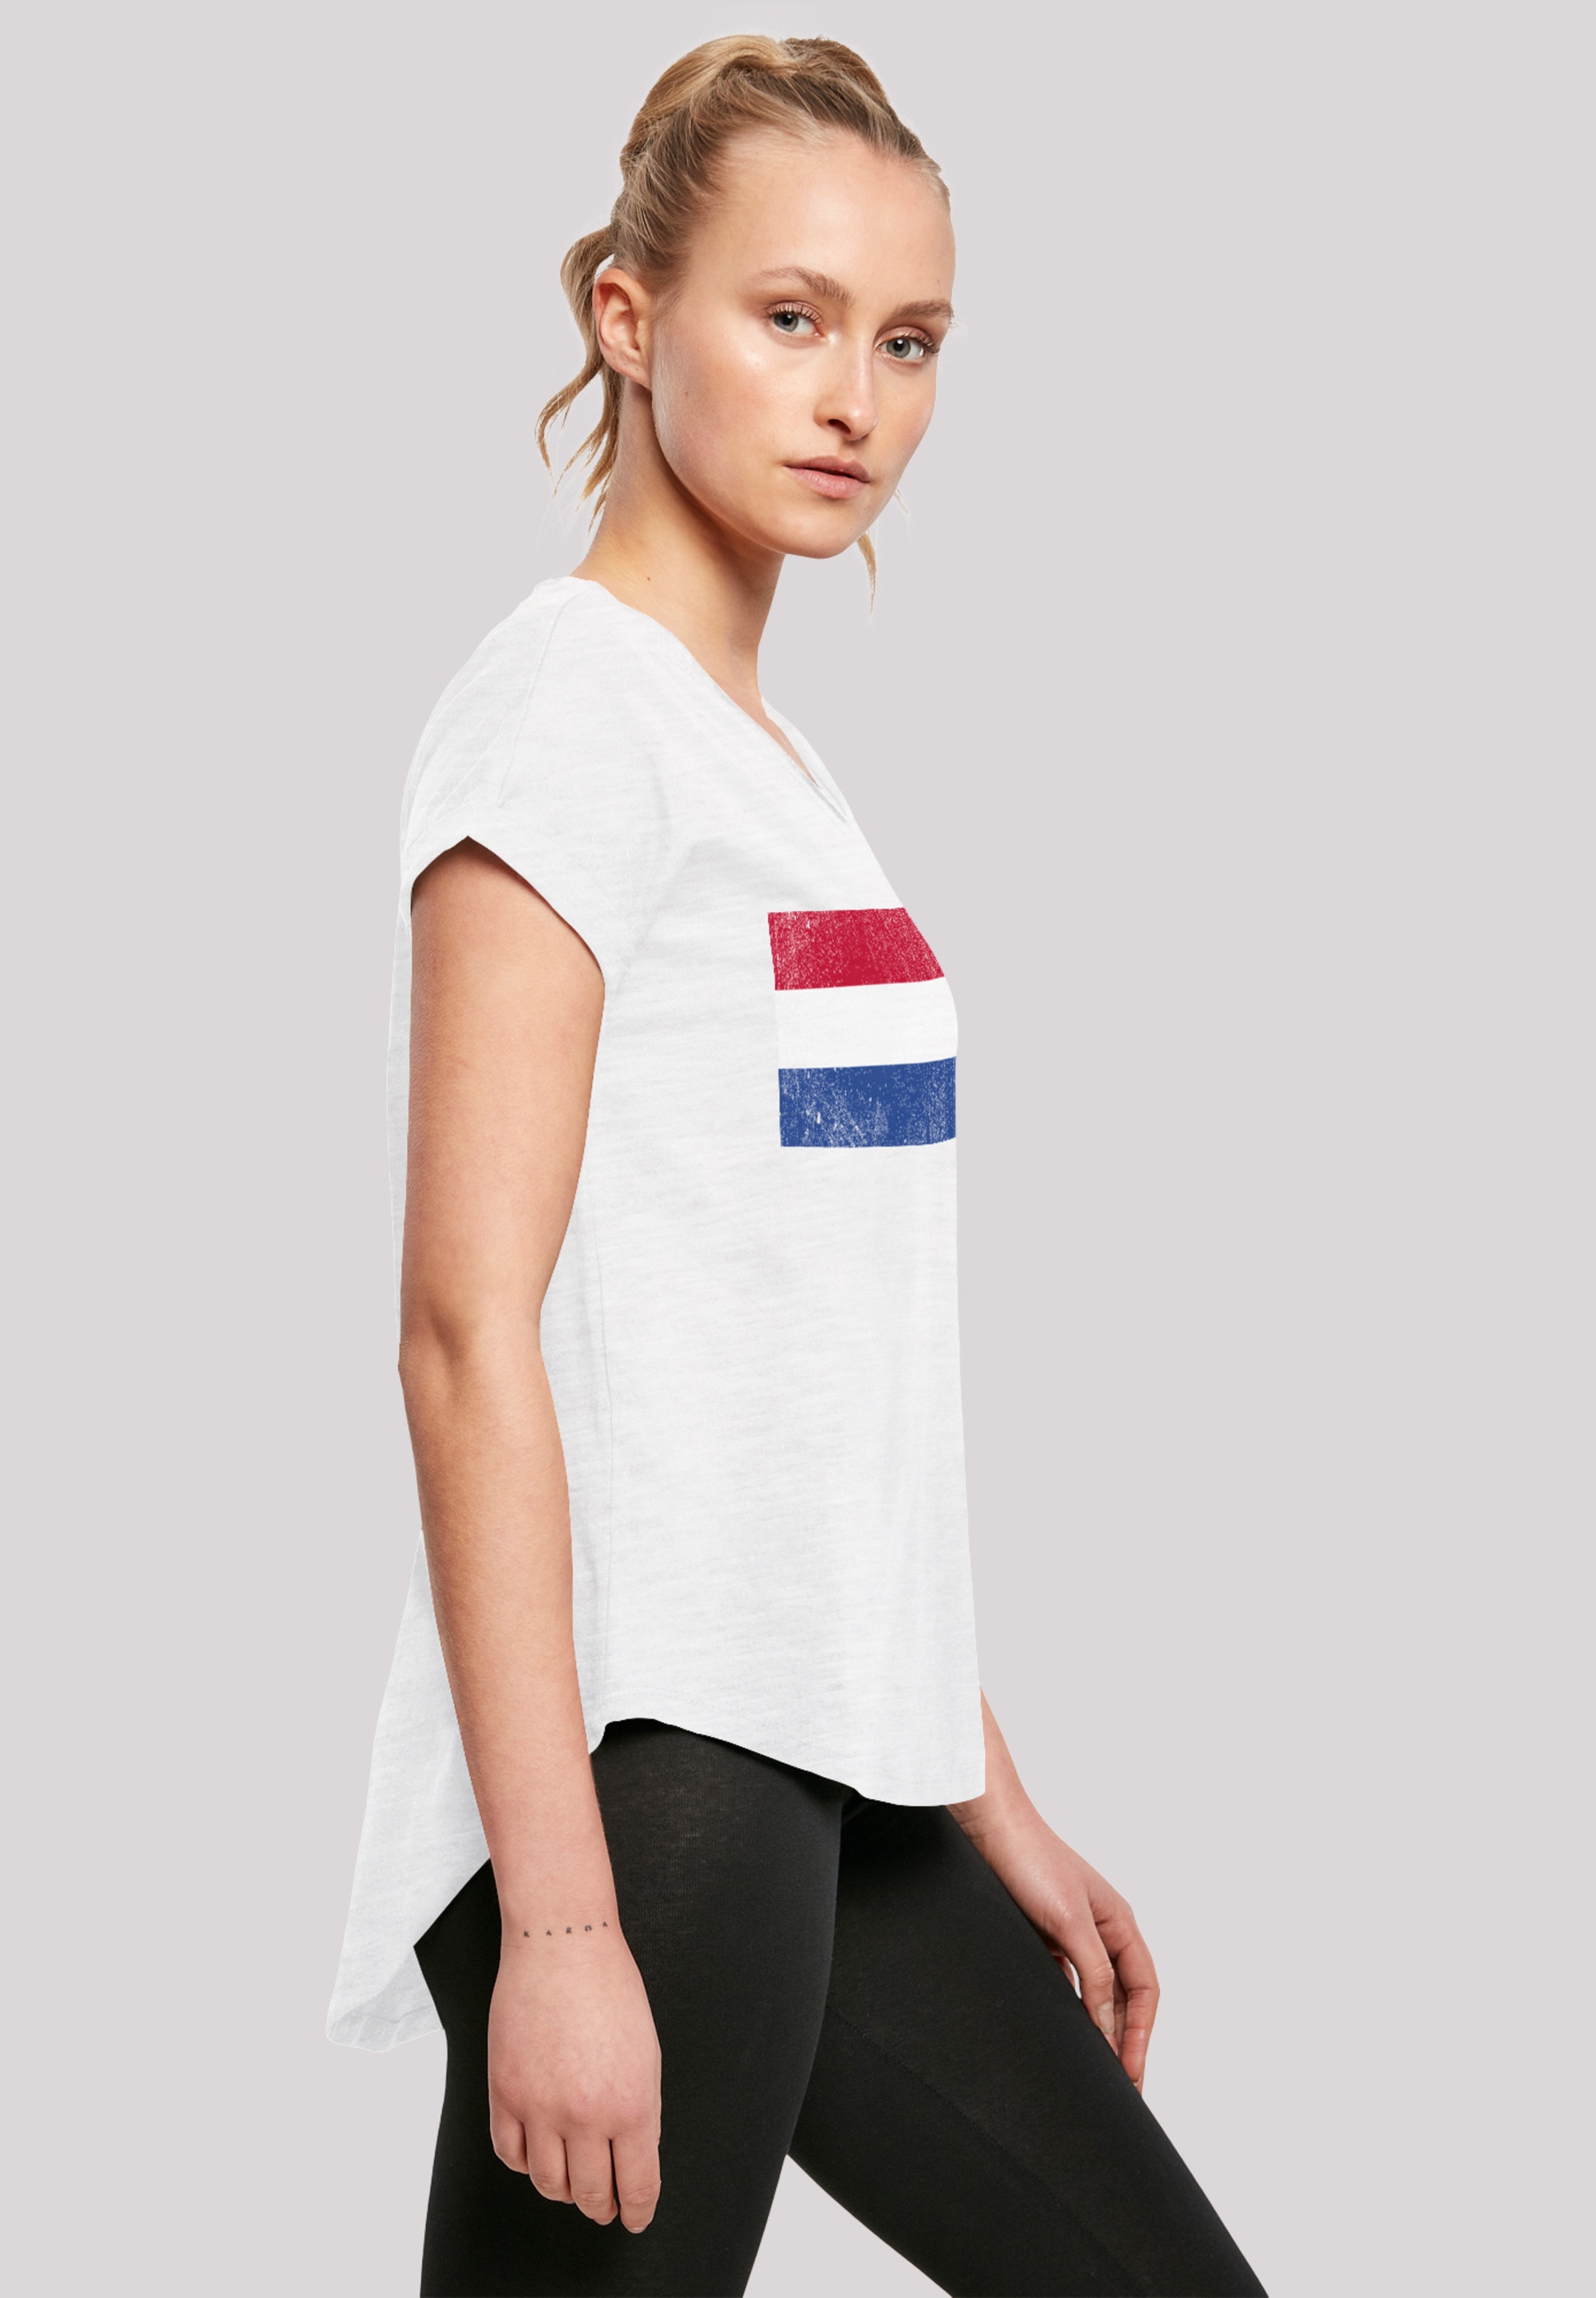 F4NT4STIC T-Shirt shoppen Holland distressed«, Flagge Print »Netherlands NIederlande